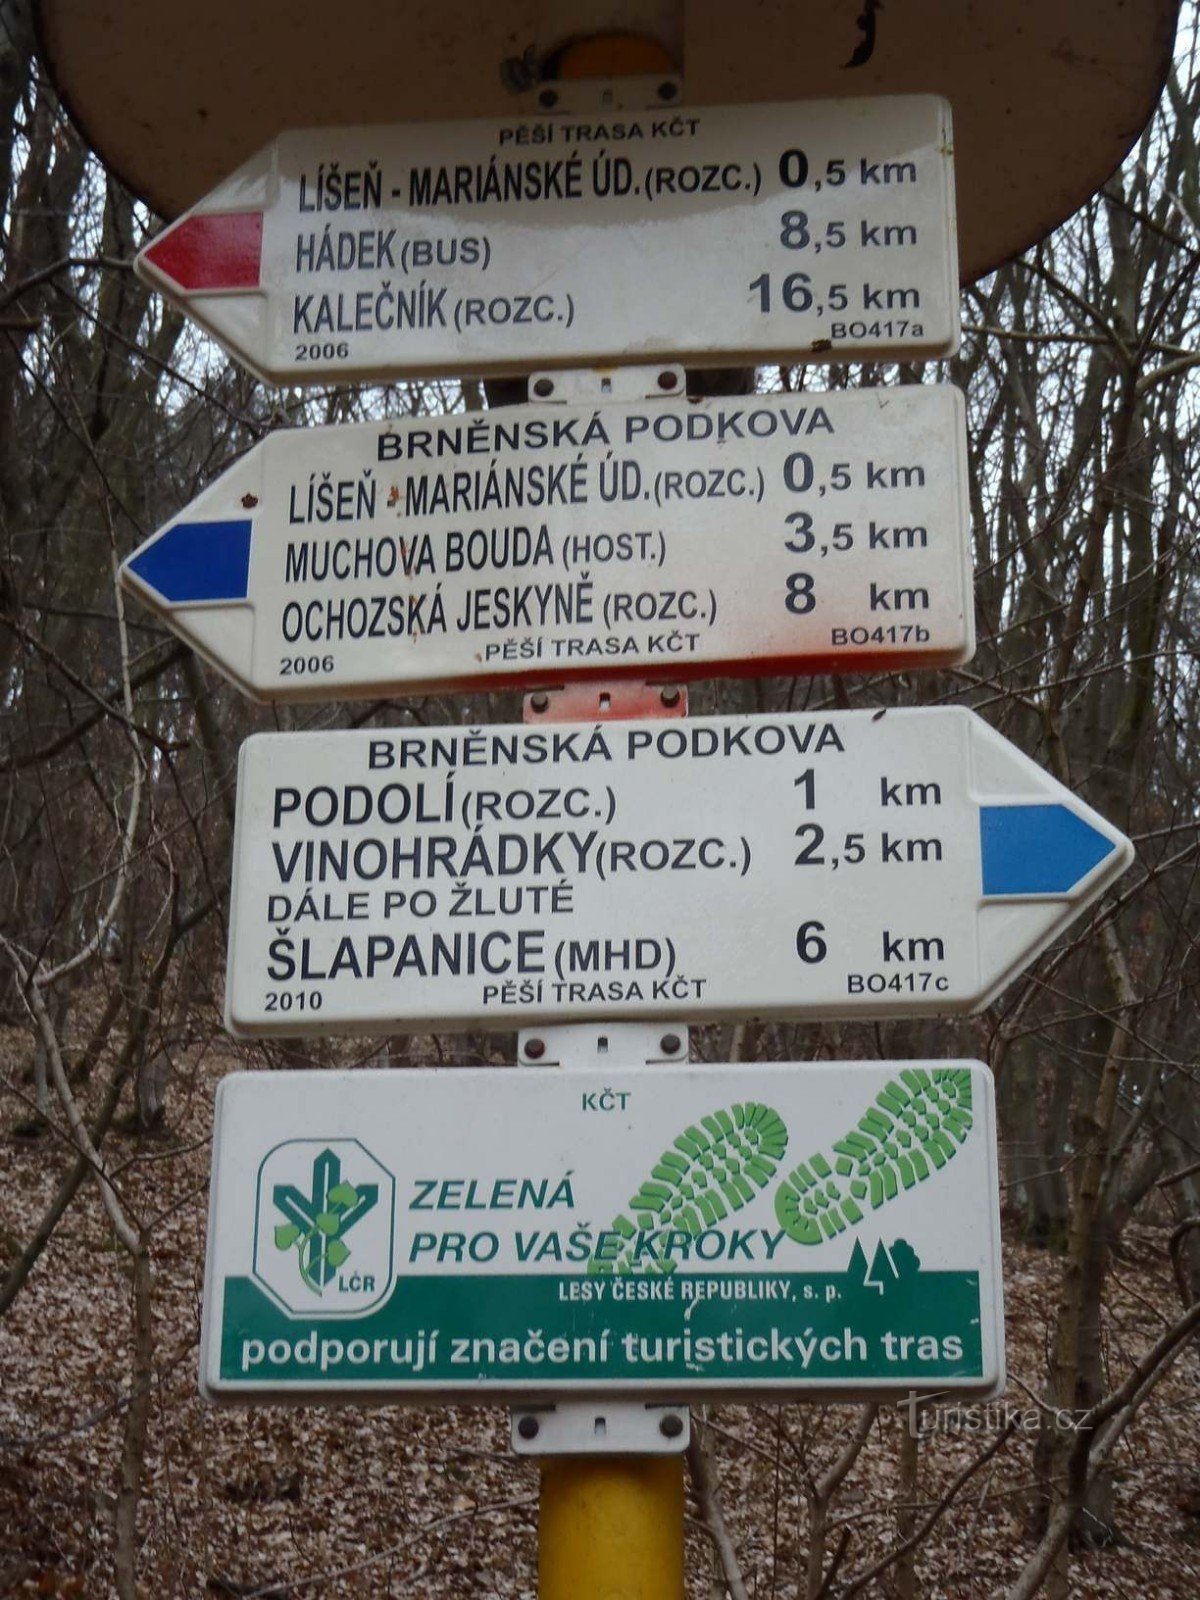 Sinalização turística Brno Líšeň Mariánské údolí Transporte público - 6.2.2012 de fevereiro de XNUMX